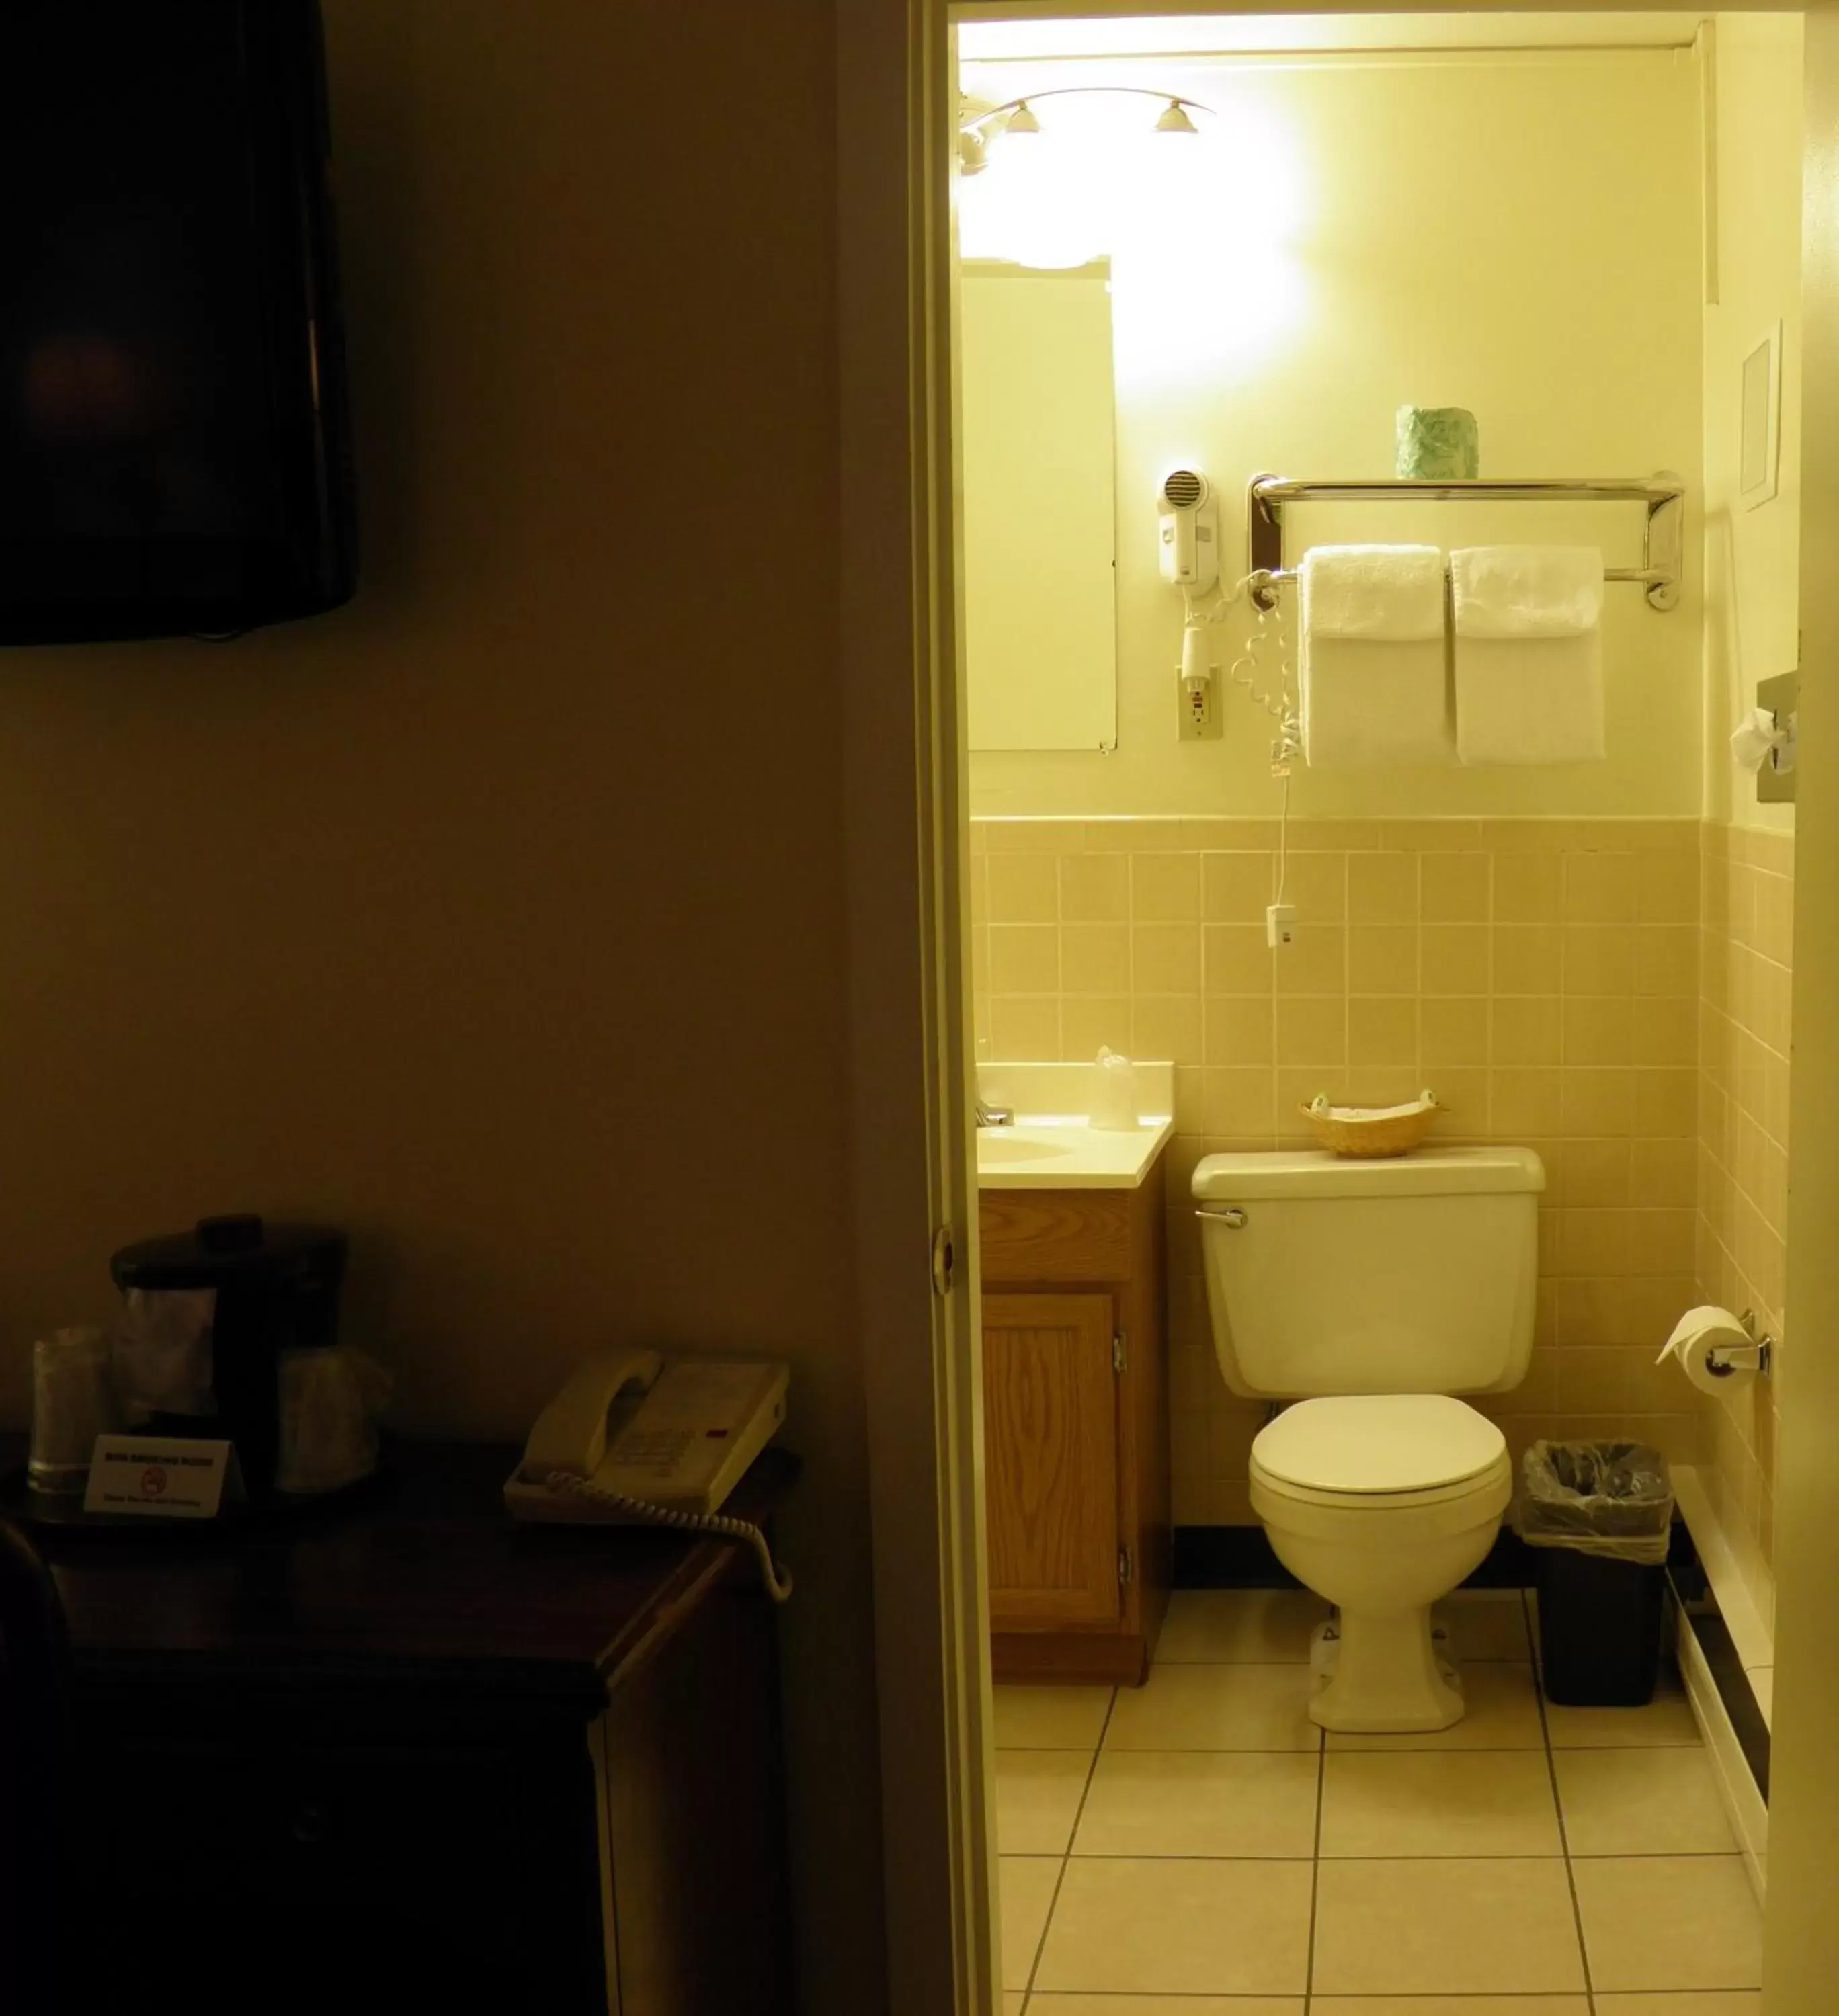 Bathroom in Travelers Inn